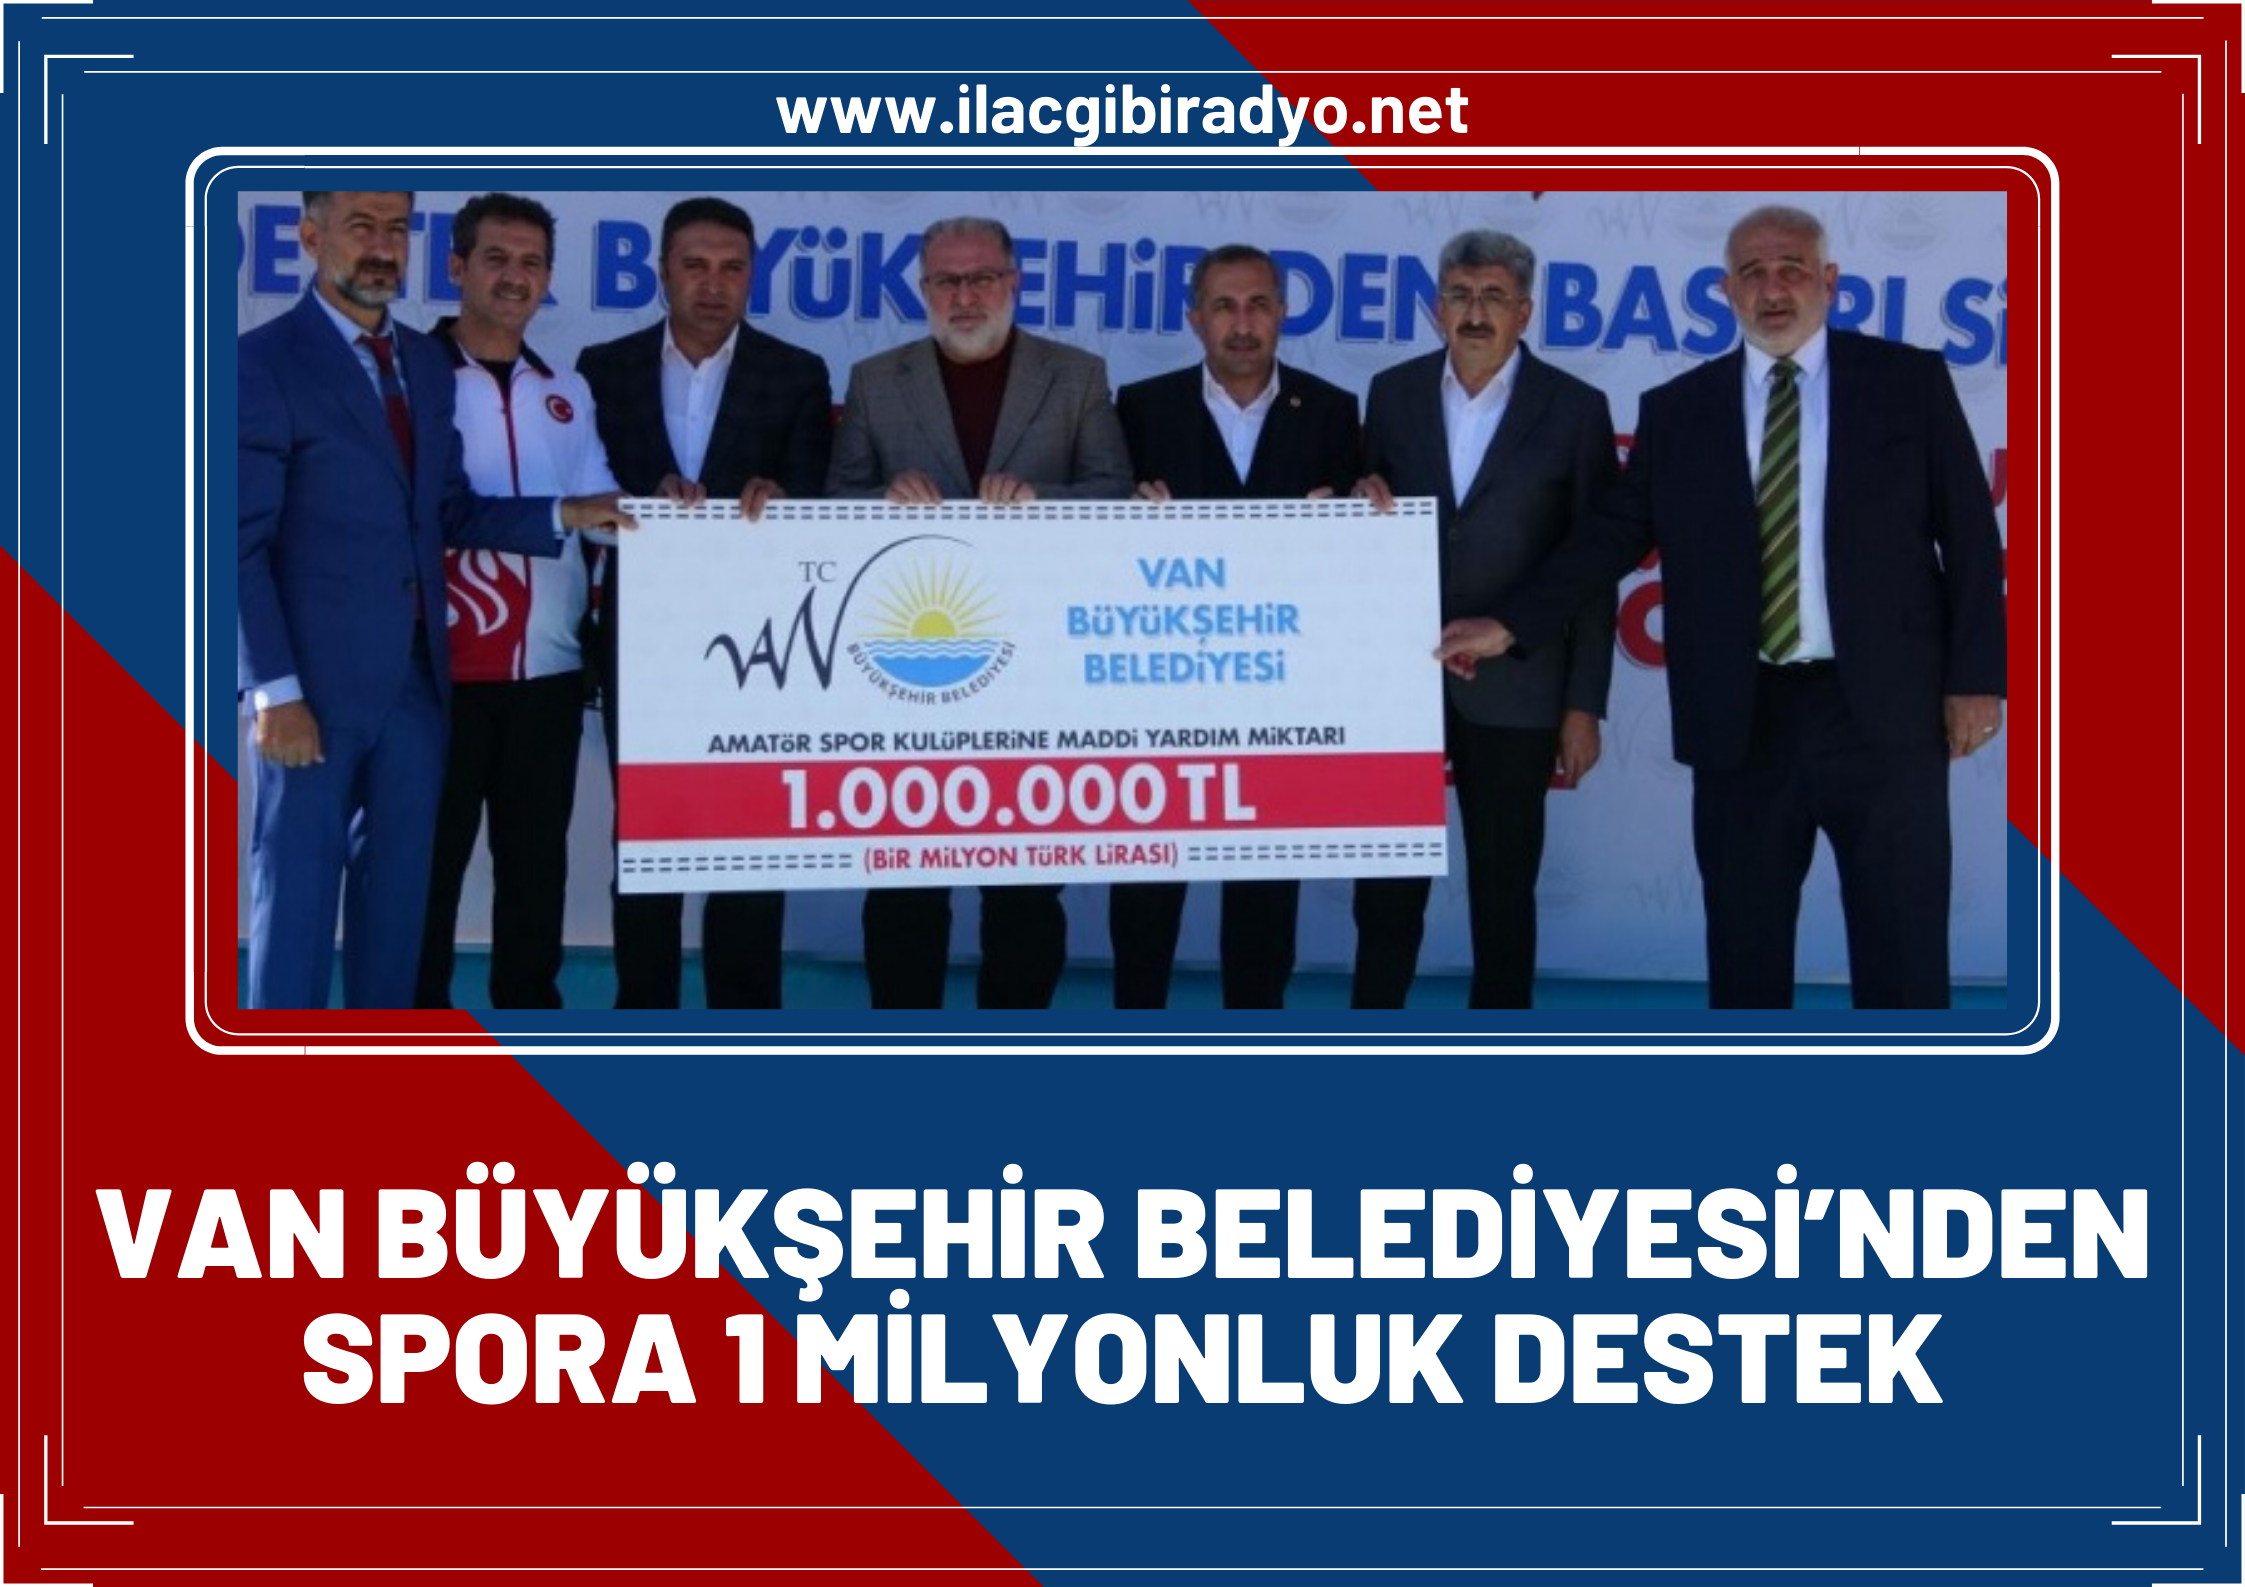 Van Büyükşehir Belediyesi’nden spora 1 milyonluk destek!